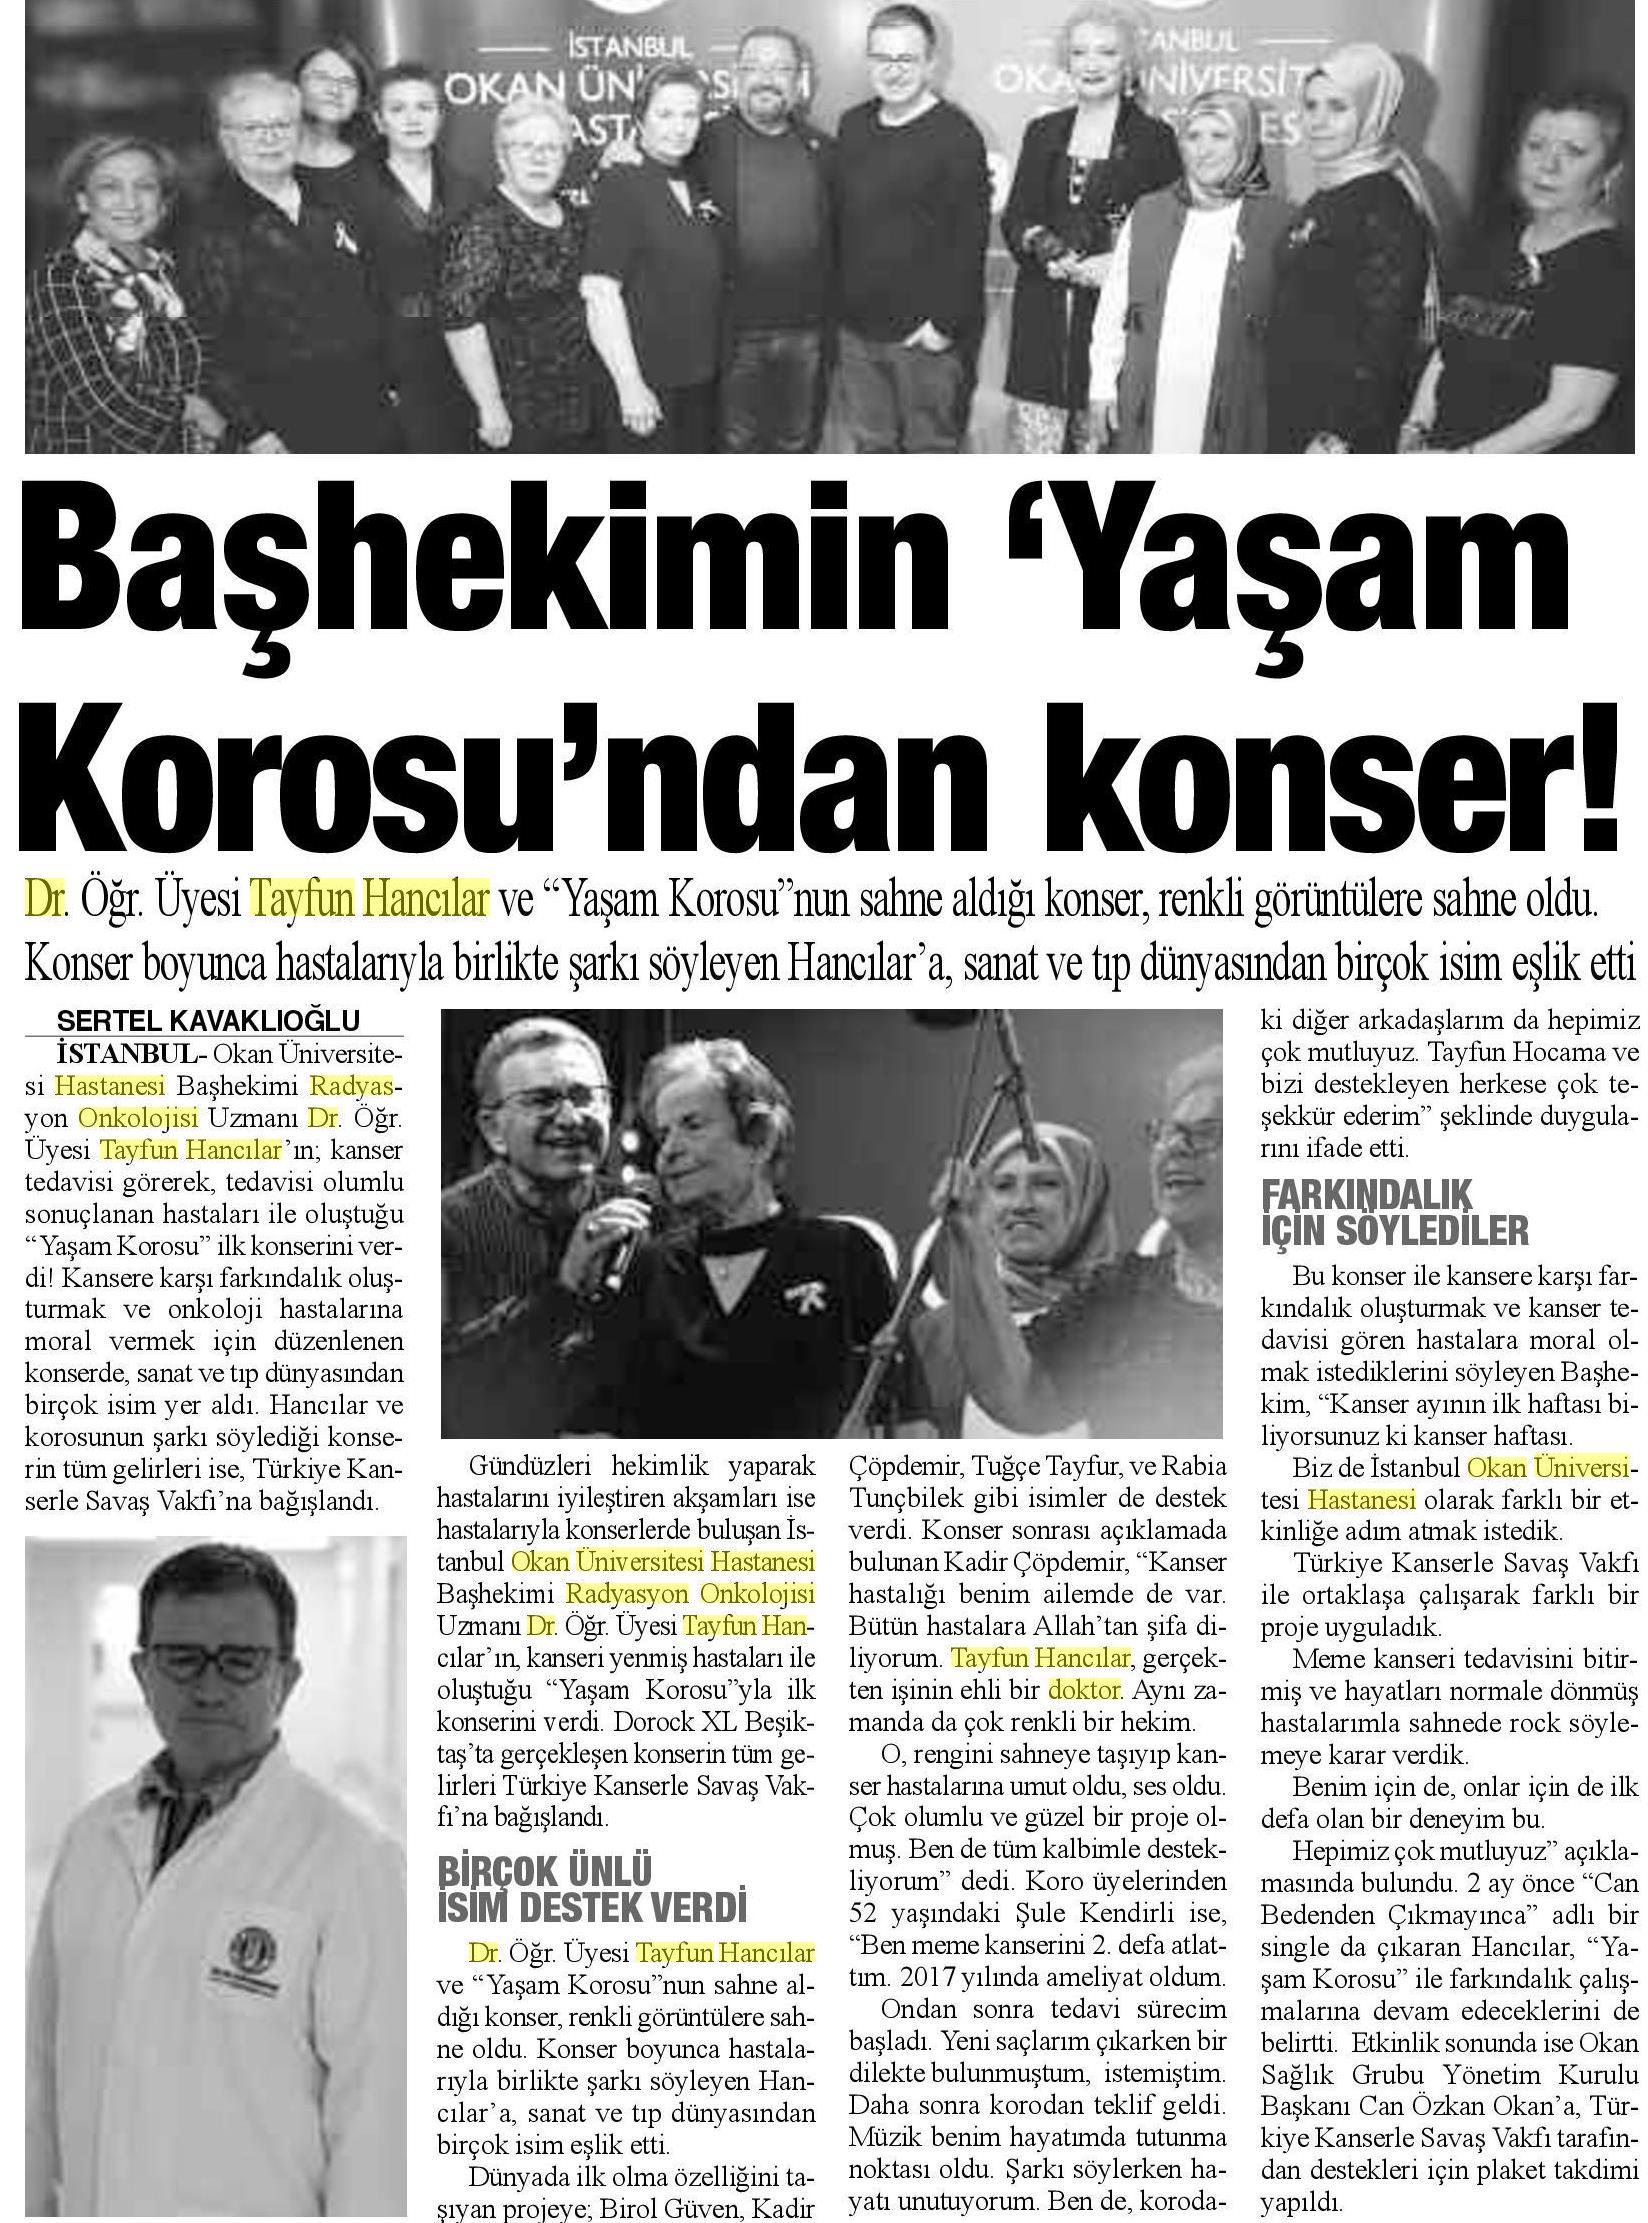 06.04.2019 Bizim Anadolu Gazetesi BAŞHEKİMİN YAŞAM KORUSU'NDAN KONSER!